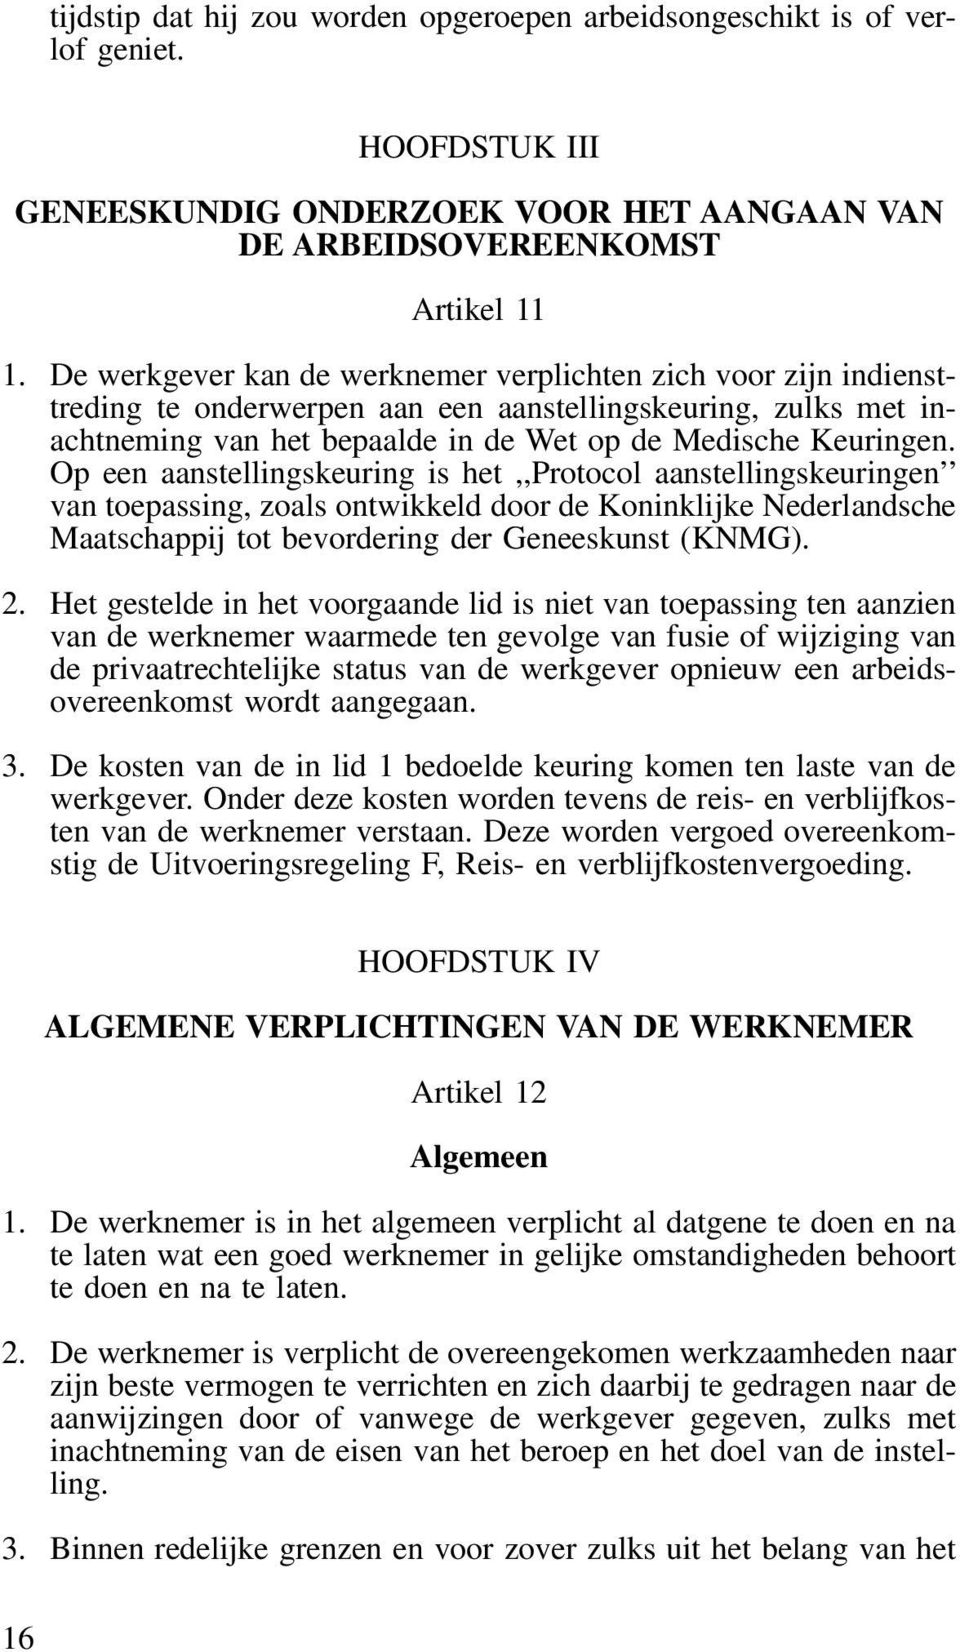 Op een aanstellingskeuring is het,,protocol aanstellingskeuringen van toepassing, zoals ontwikkeld door de Koninklijke Nederlandsche Maatschappij tot bevordering der Geneeskunst (KNMG). 2.